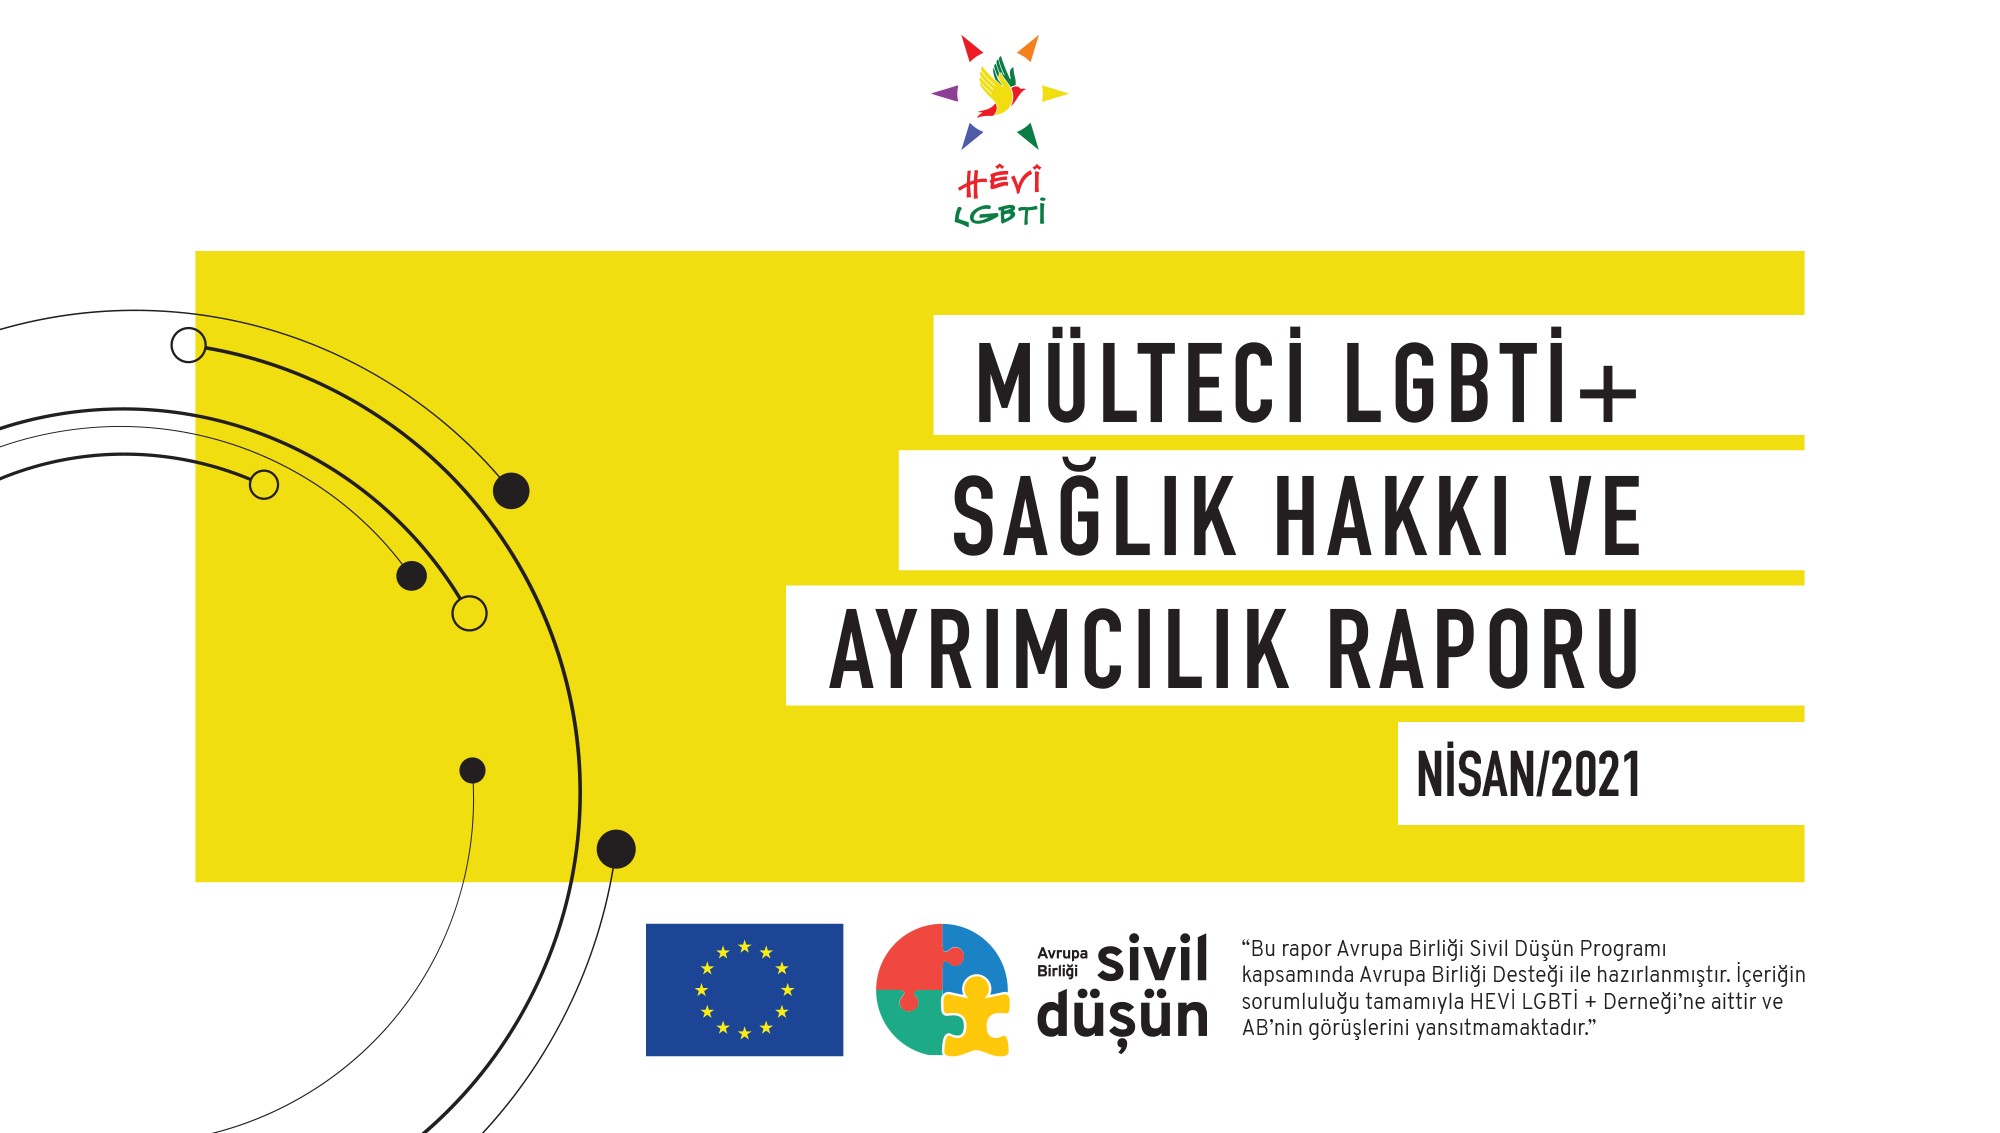 “Mülteci LGBTİ+ Sağlık Hakkı ve Ayrımcılık Raporu” yayımda Kaos GL - LGBTİ+ Haber Portalı